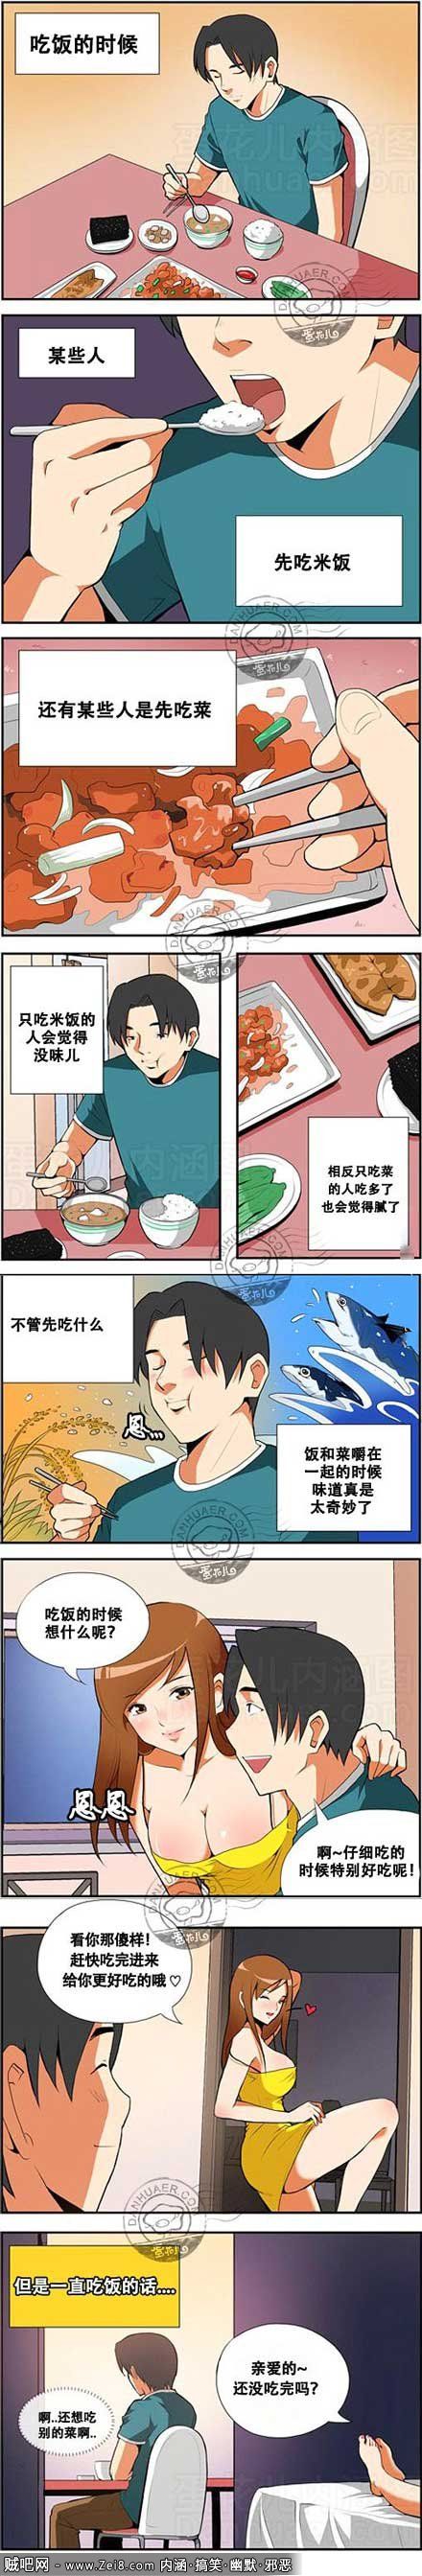 [韩国漫画(带内涵图)]：吃货不解风情